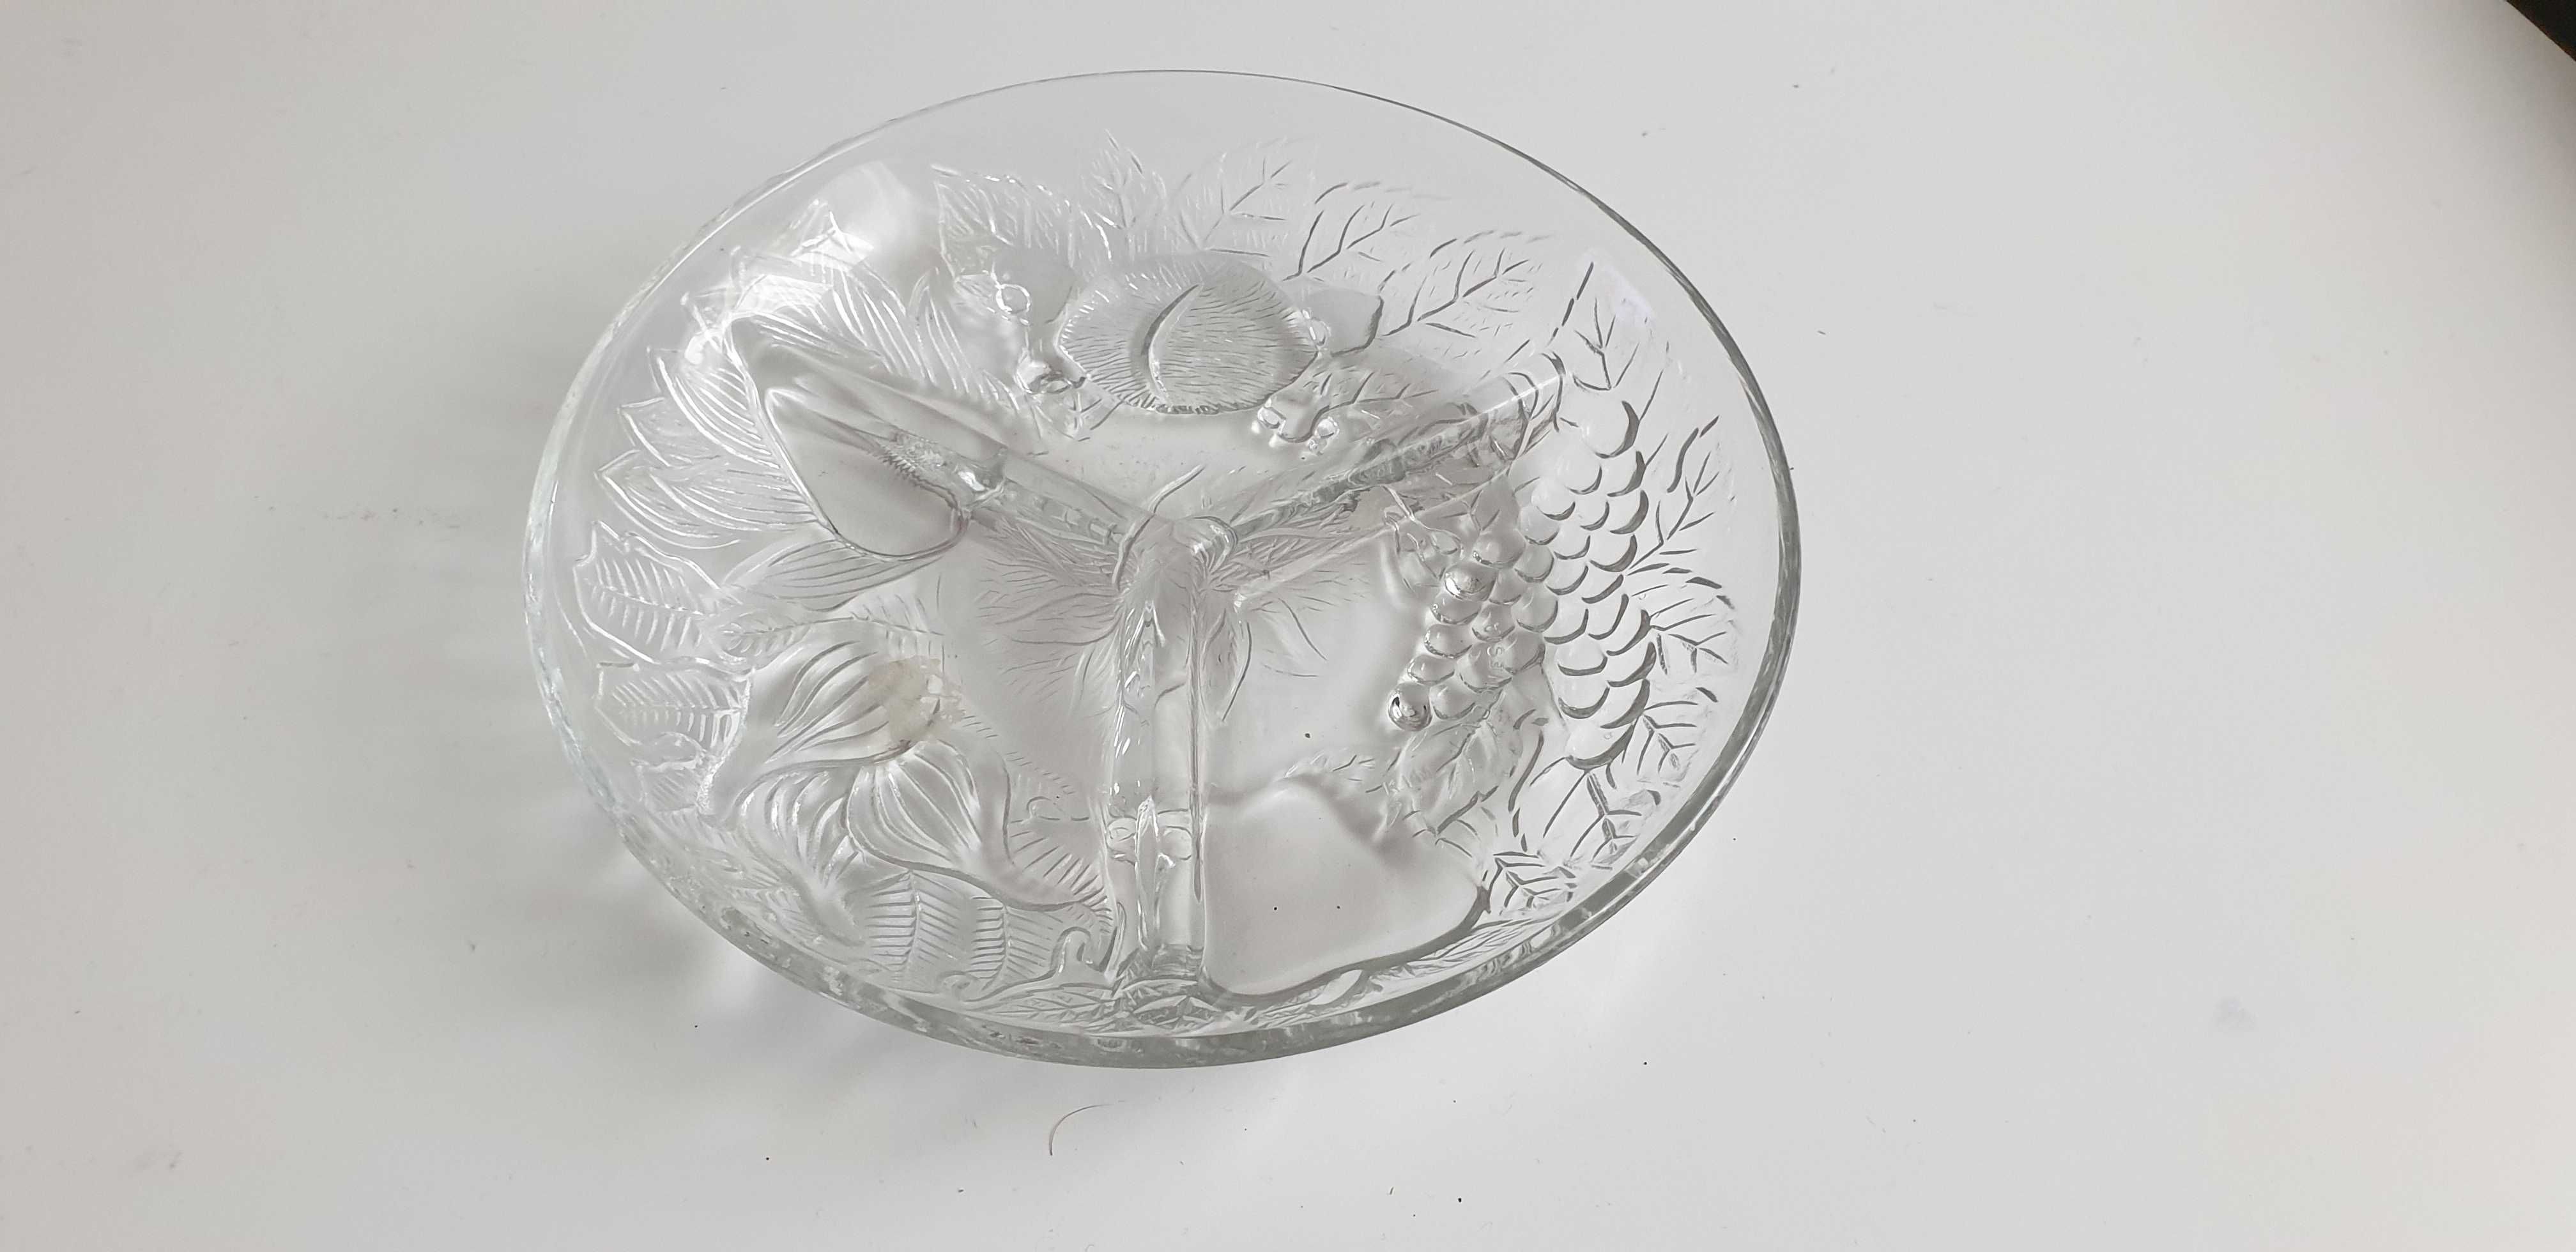 Starocie z Gdyni - Stare naczynia - talerz szklany na przekąski